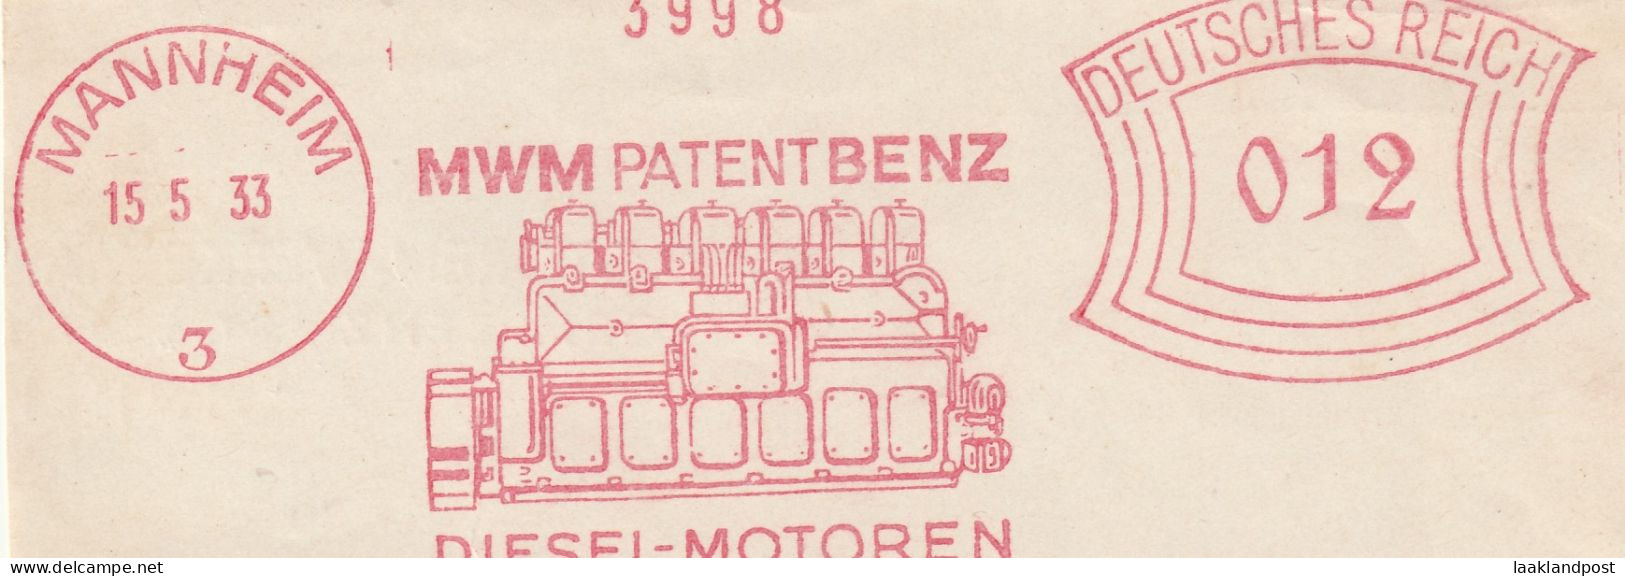 Deutsche Reichpost Nice Cut Meter Freistempel MWM Patent Benz Diesel Motoren, Mannheim 15-5-1933 - Machines à Affranchir